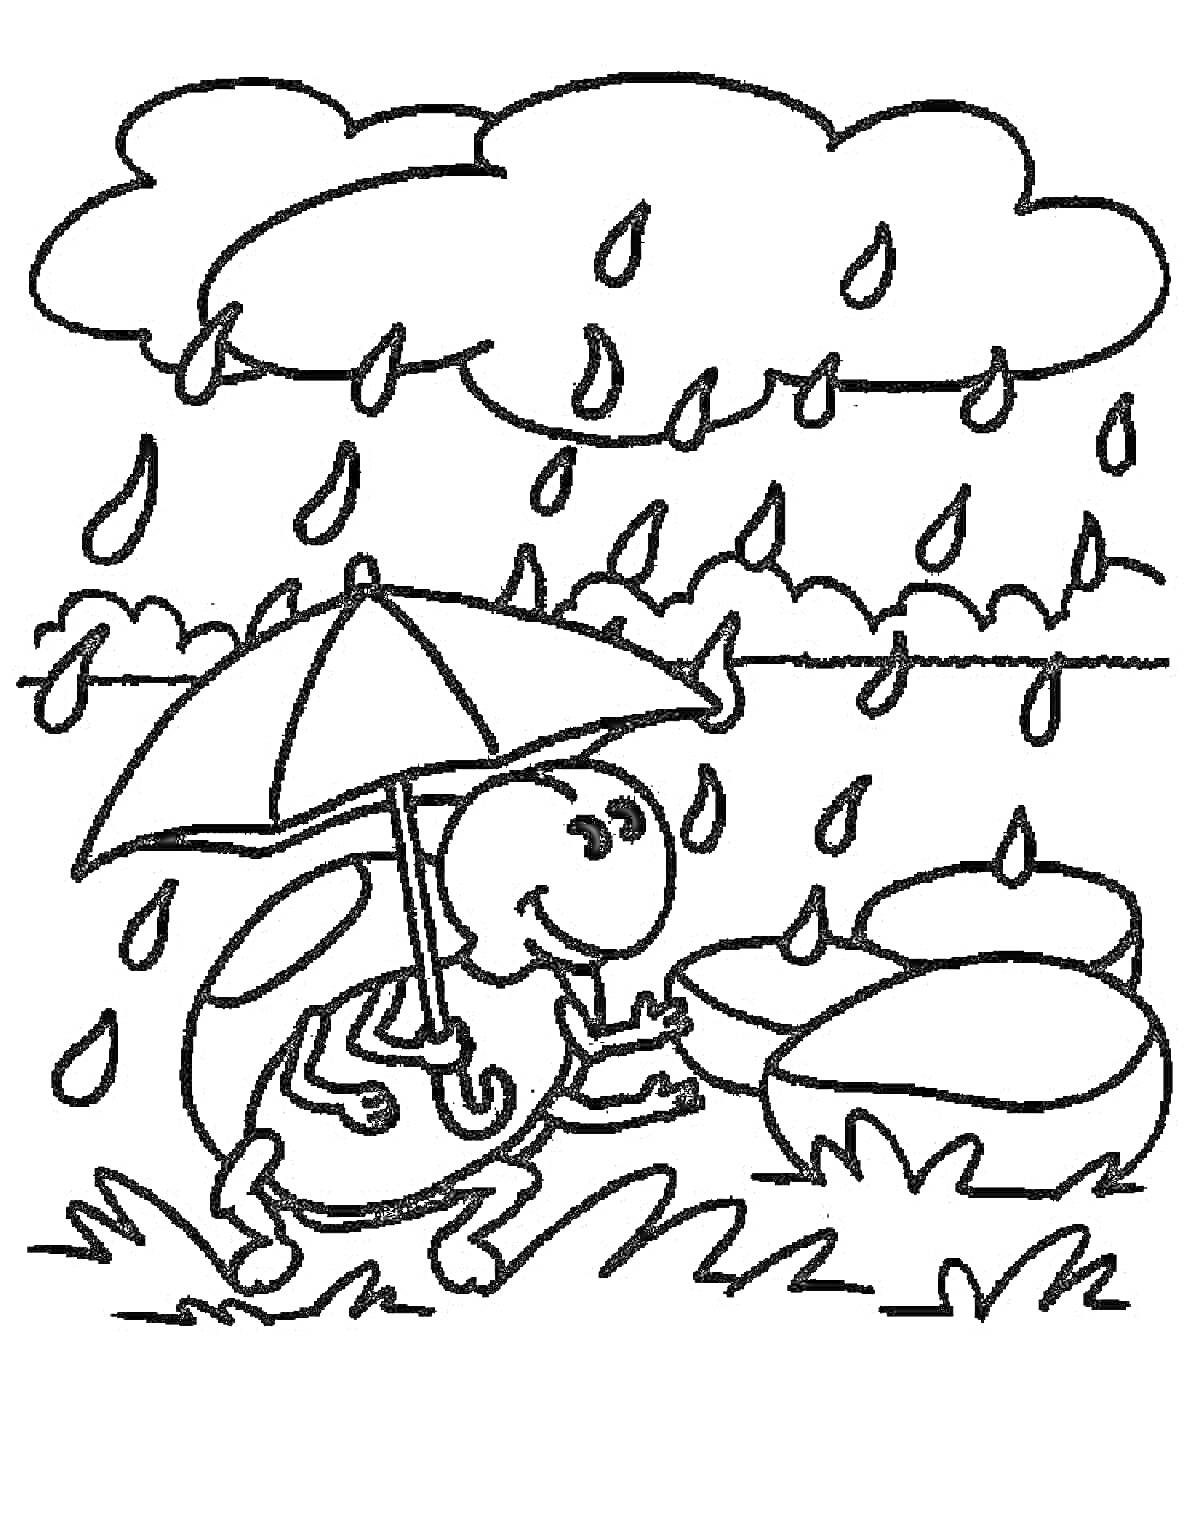 Черепаха с зонтом под дождём возле водоёма с кувшинками